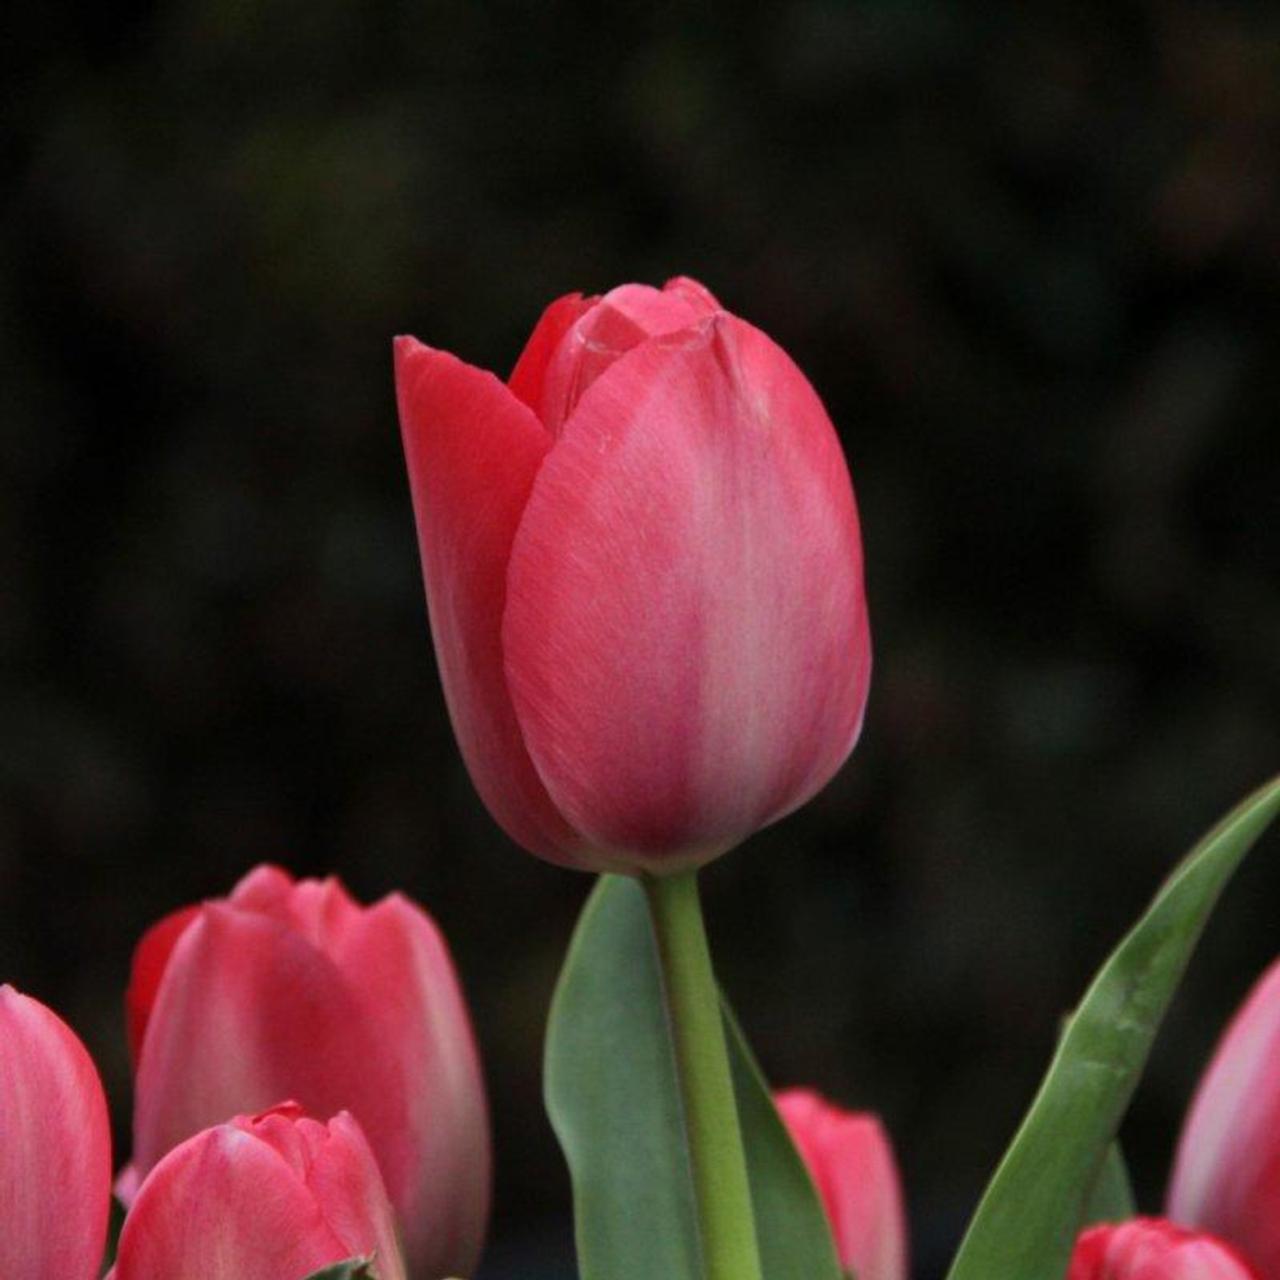 Tulipa 'Van Eijk' plant